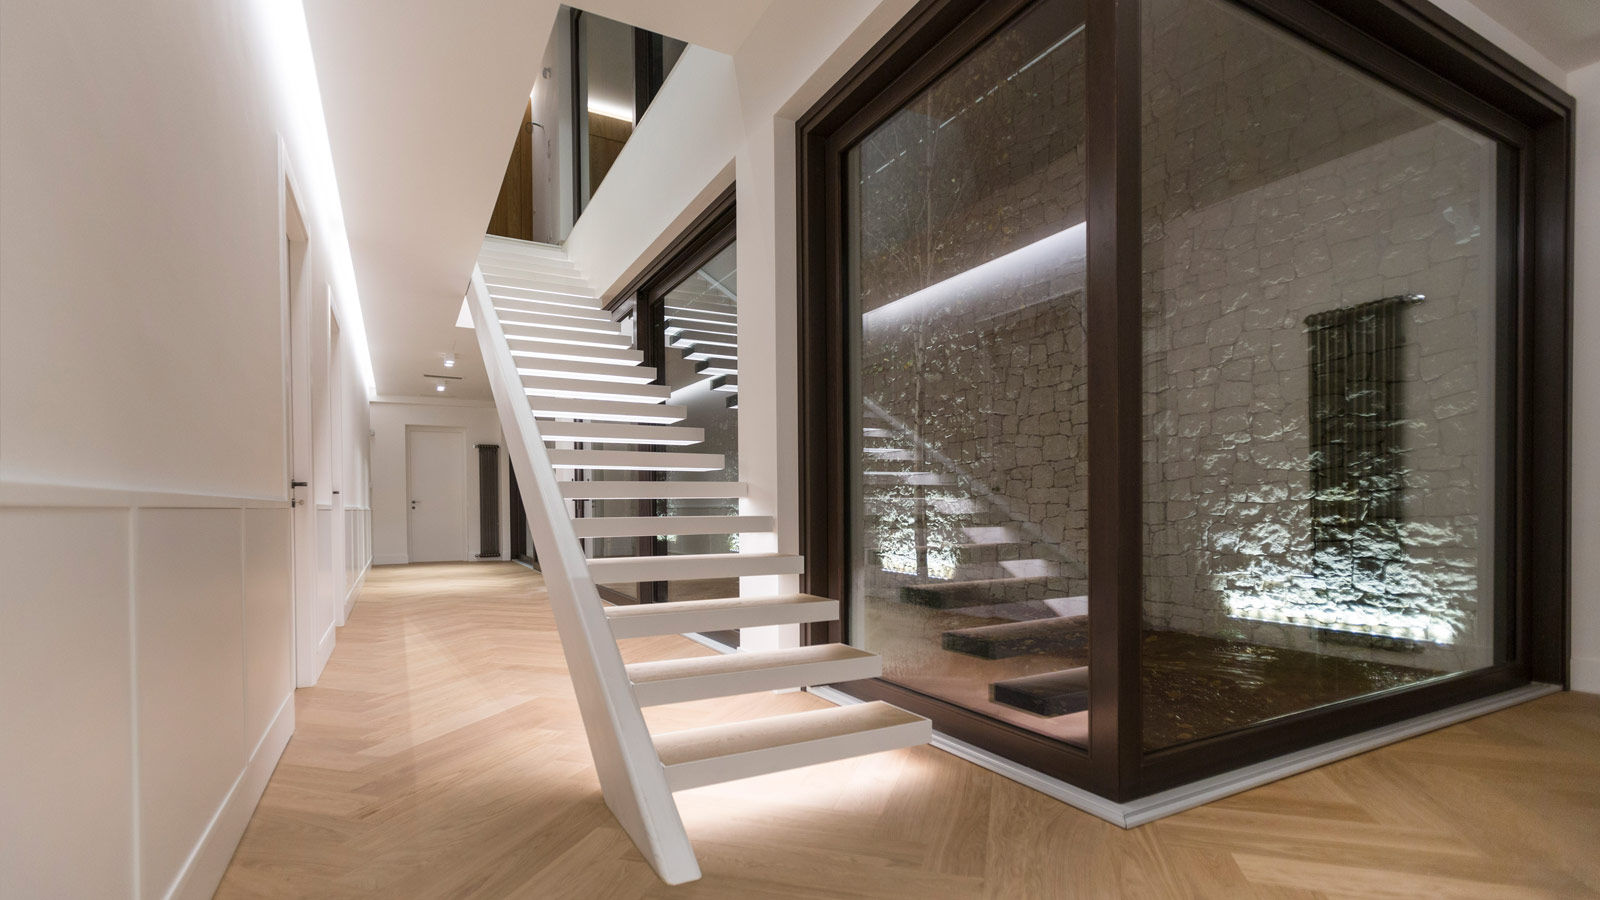 Villa Ferroli | Stairway GD Arredamenti درج خشب معالج Transparent GD Arredamenti,GeD Cucine,GD Cucine,staircase,stairway,ladder,white house,glass facade,marble flooring